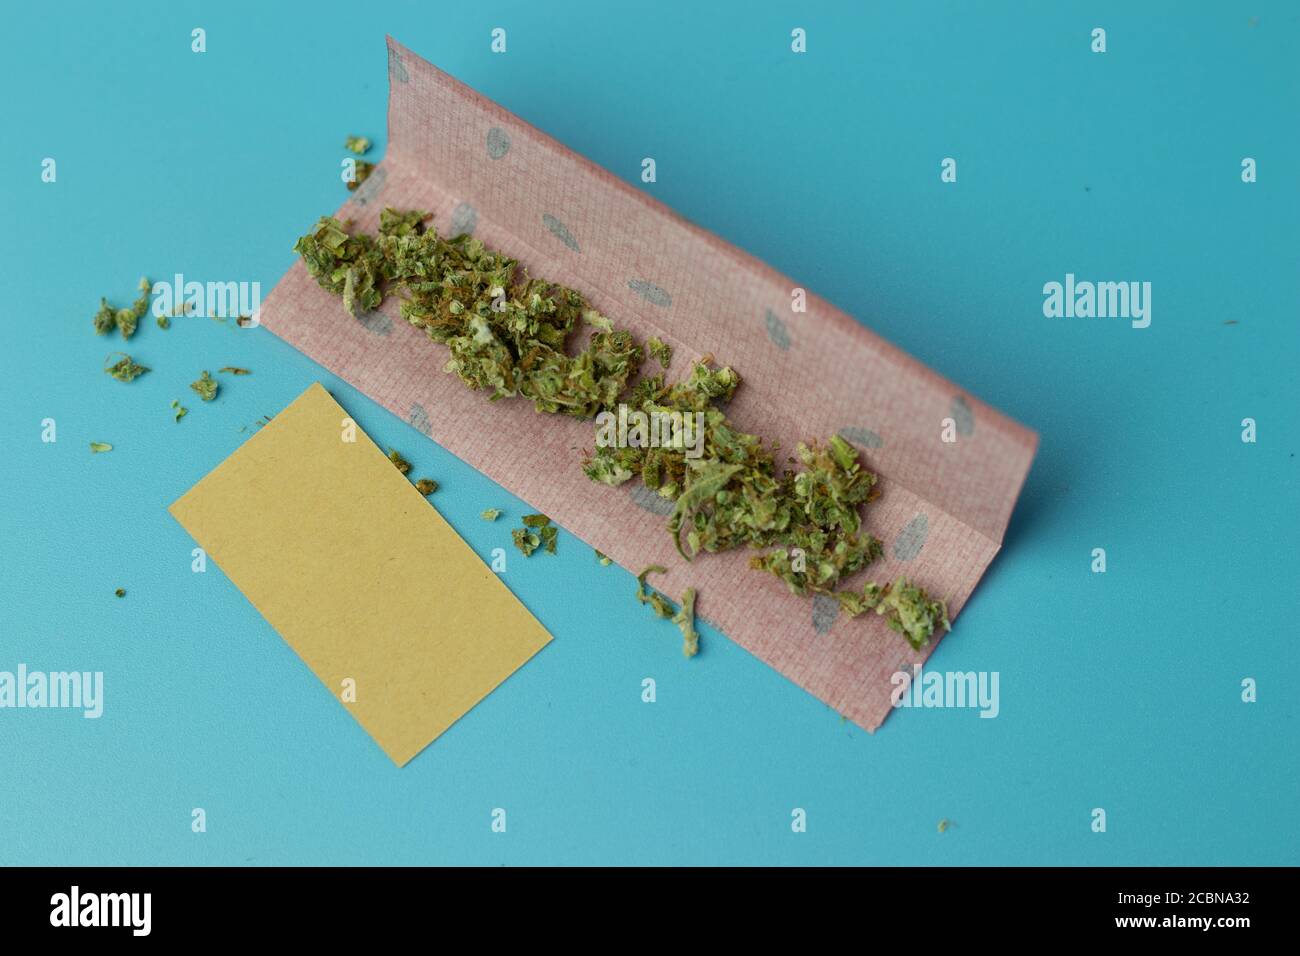 Gemeinsames Papier für Cannabis Rolle auf blauem Hintergrund Draufsicht, Marihuana Raucher Zubehör Stockfoto